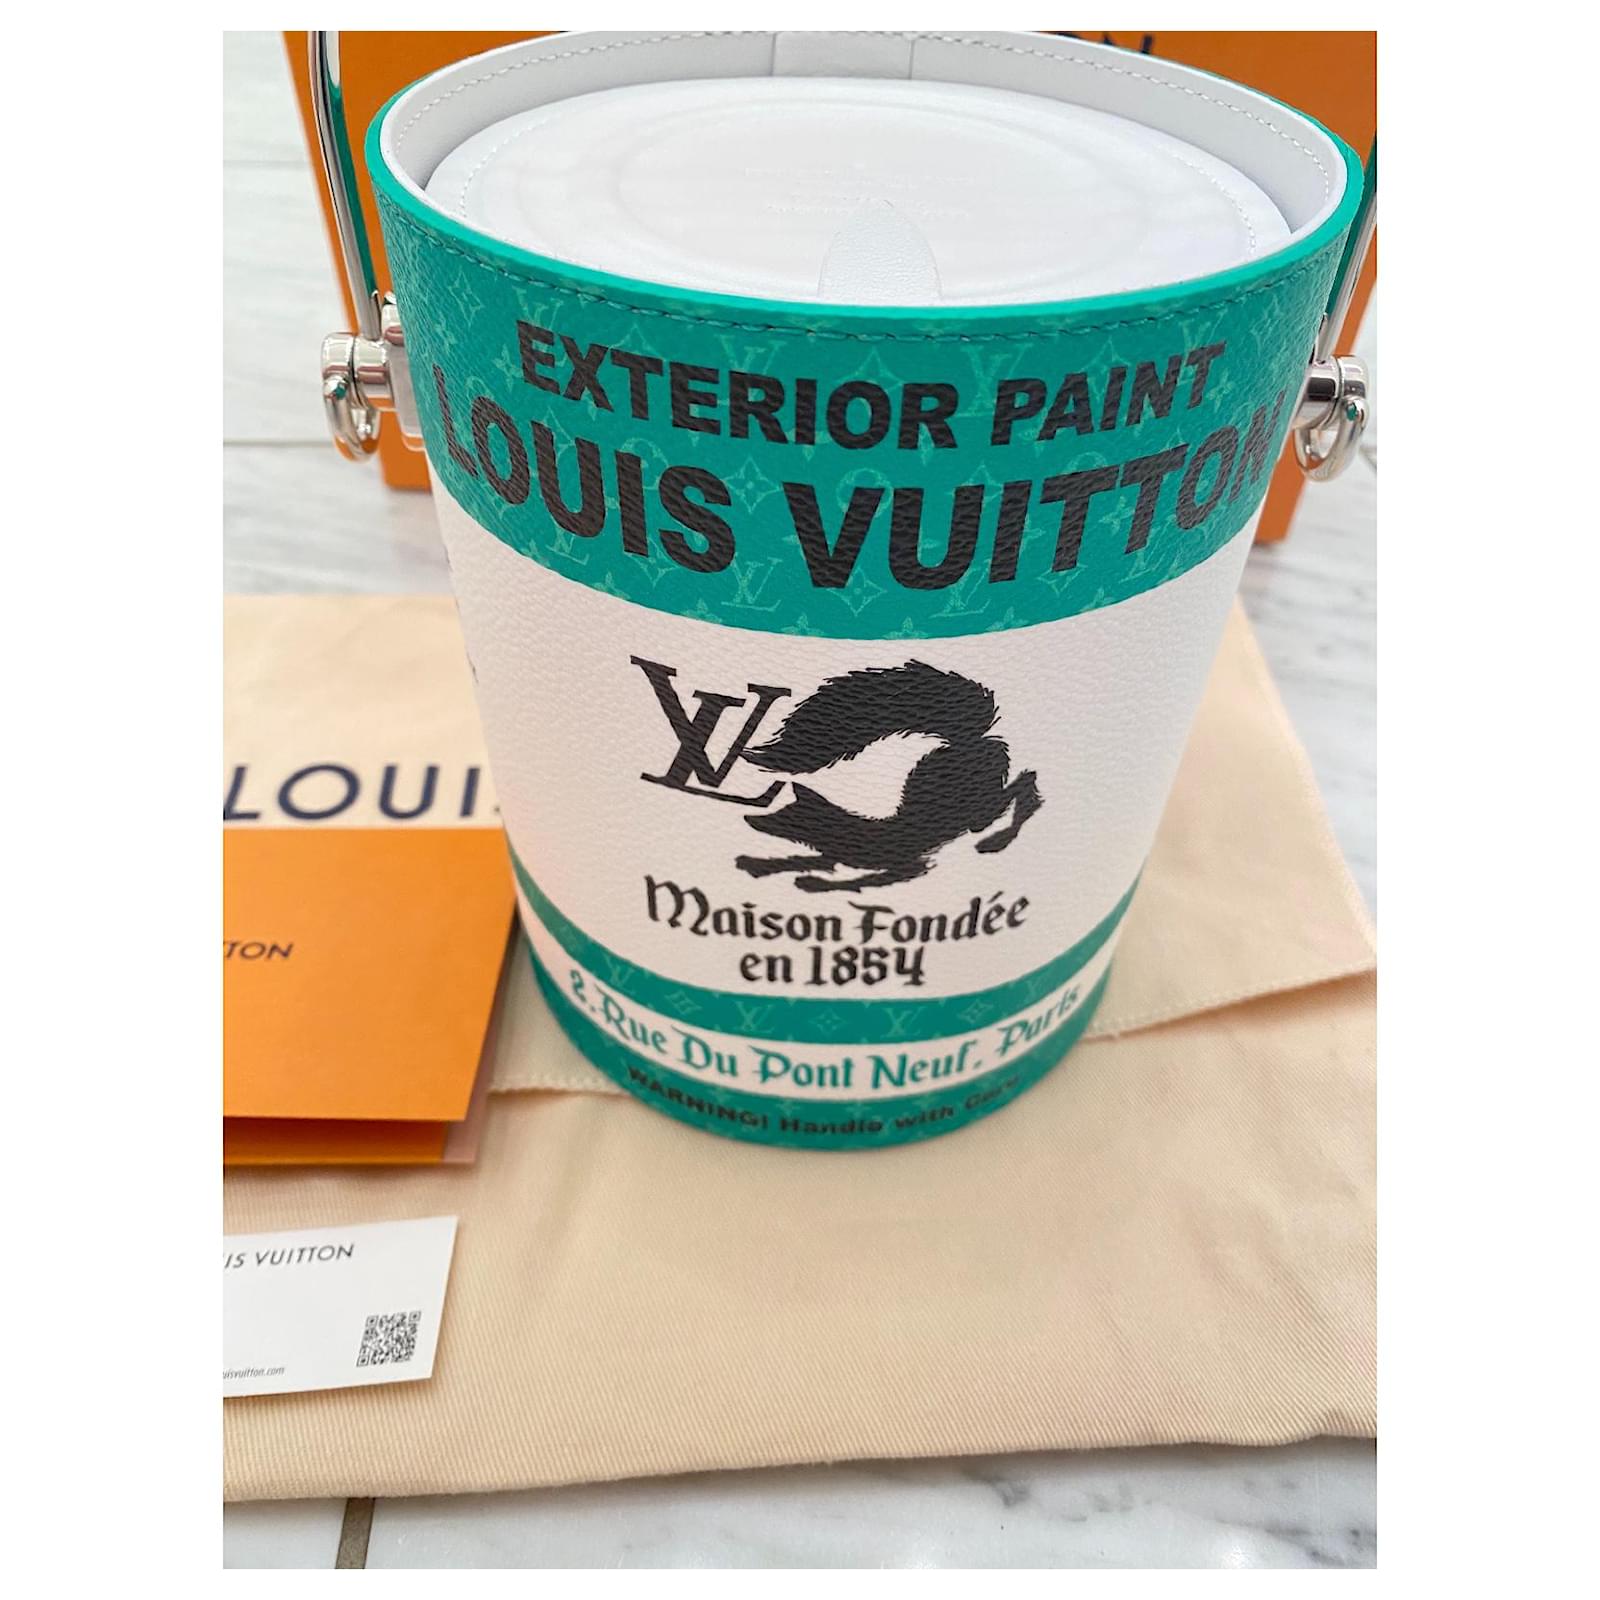 Louis Vuitton's Paint Can Bag Arrives in Virgil Abloh's Signature